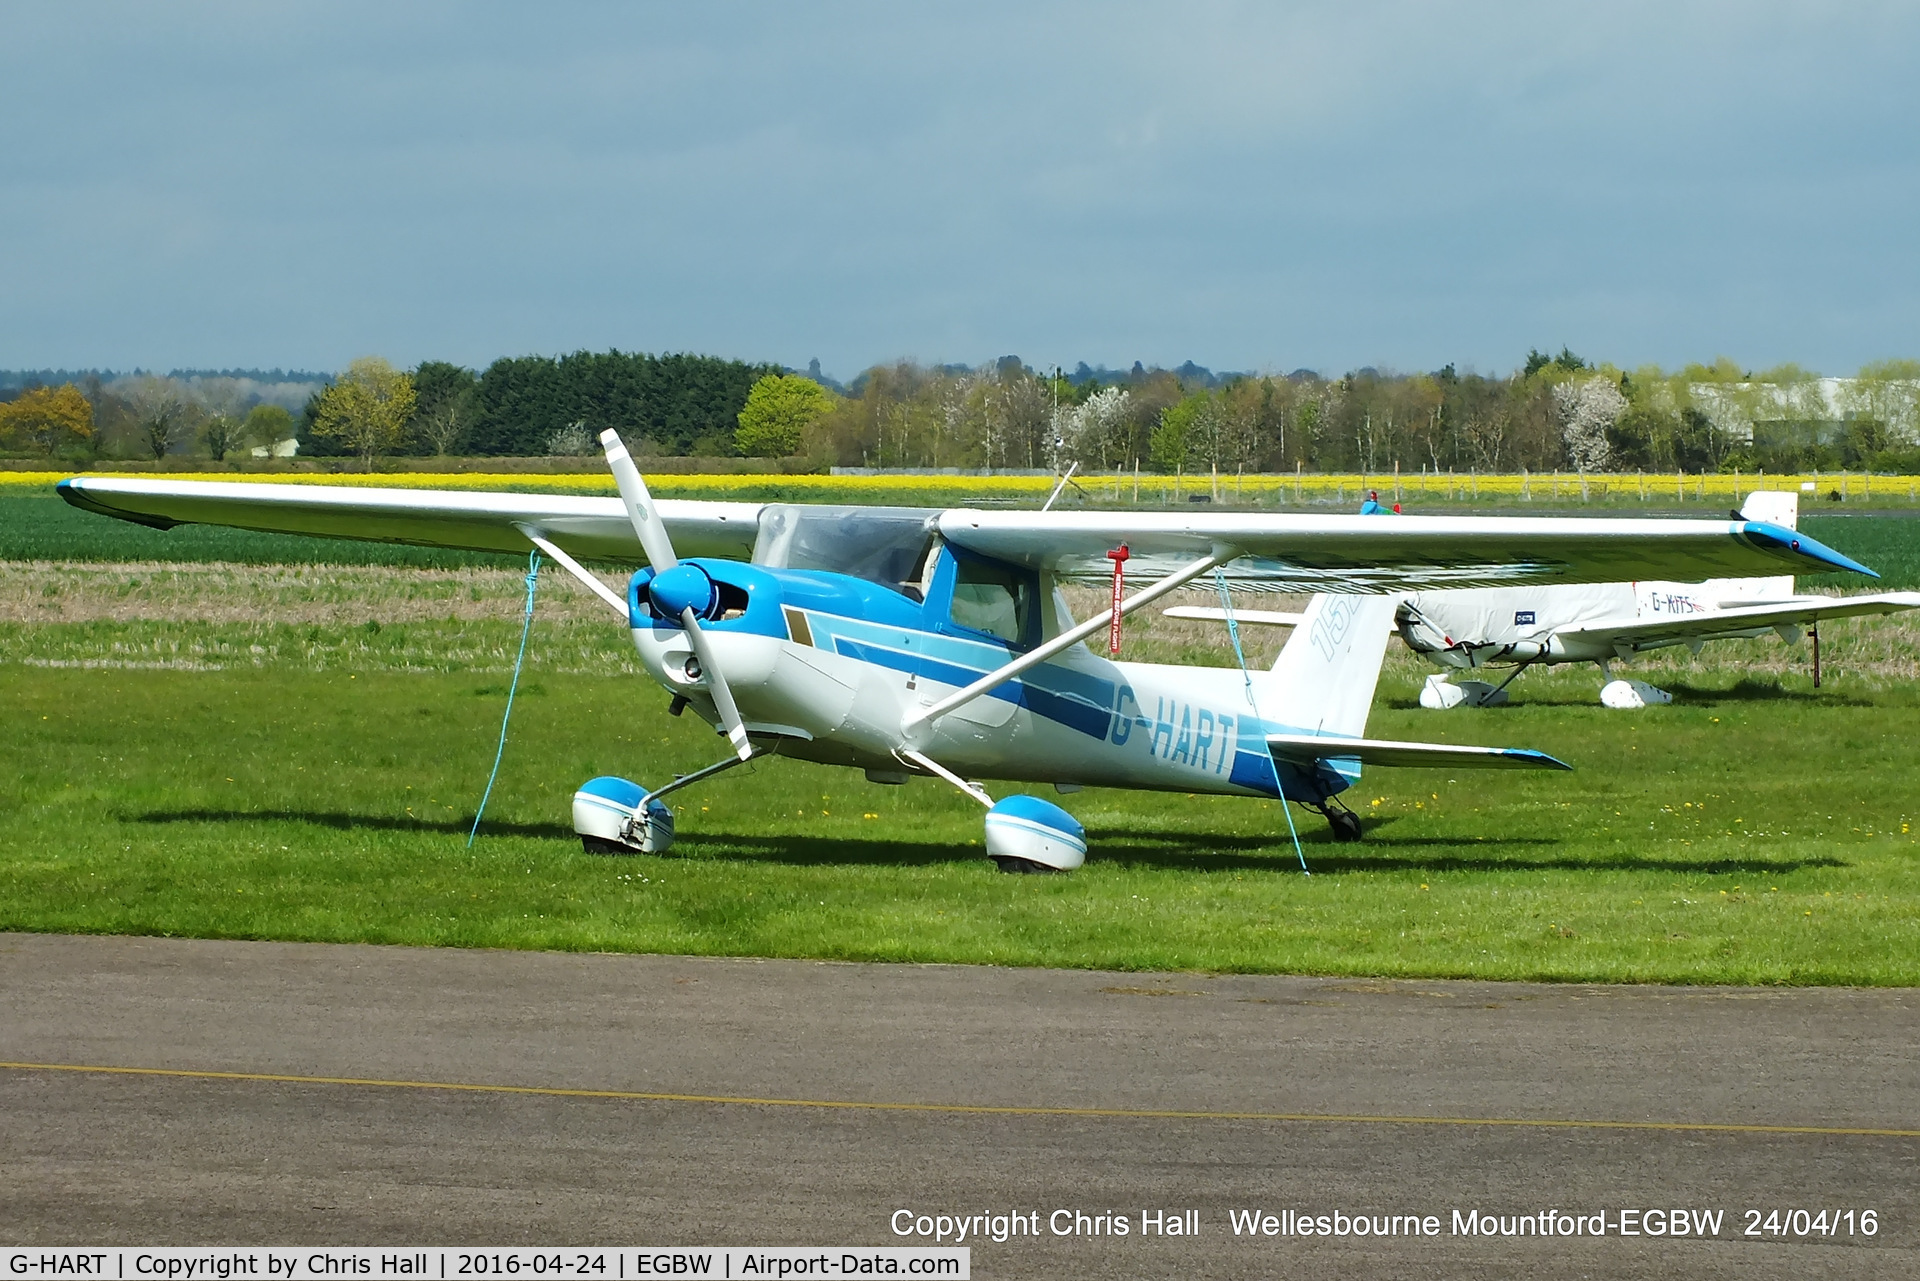 G-HART, 1979 Cessna 152 C/N 15279734, at Wellesbourne Mountford